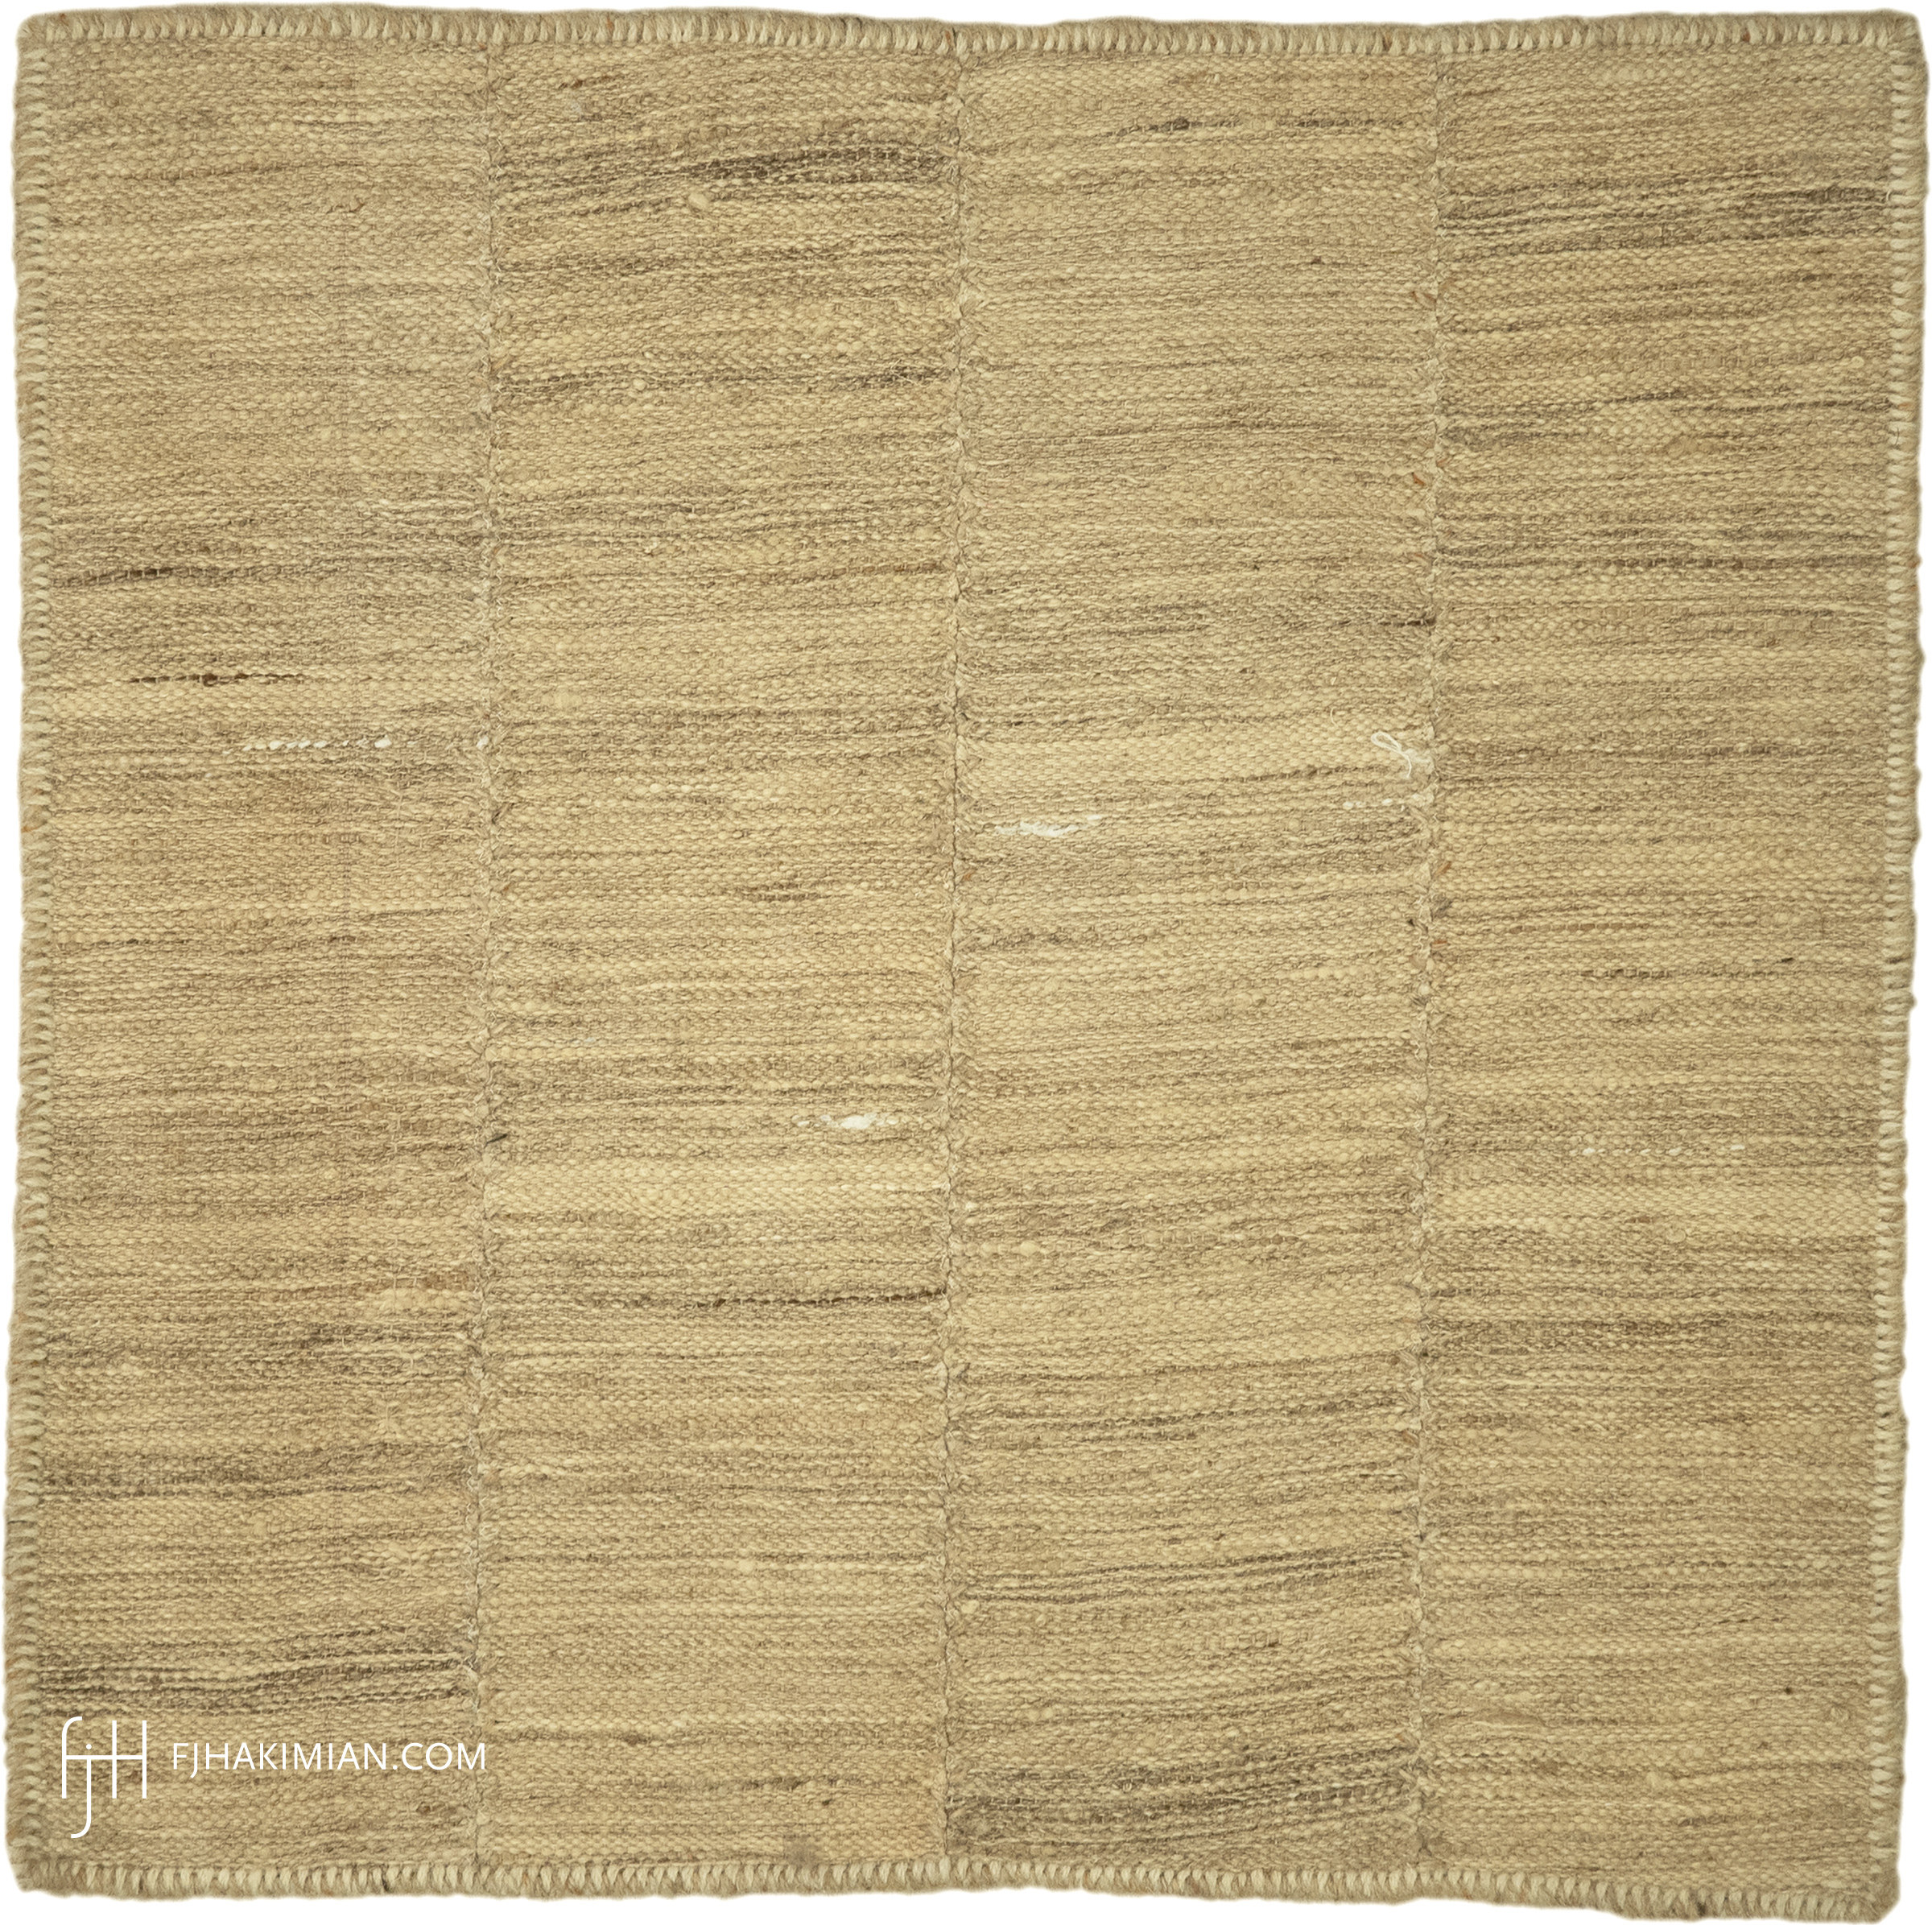 FJ Hakimian | 37578 | Custom Carpet